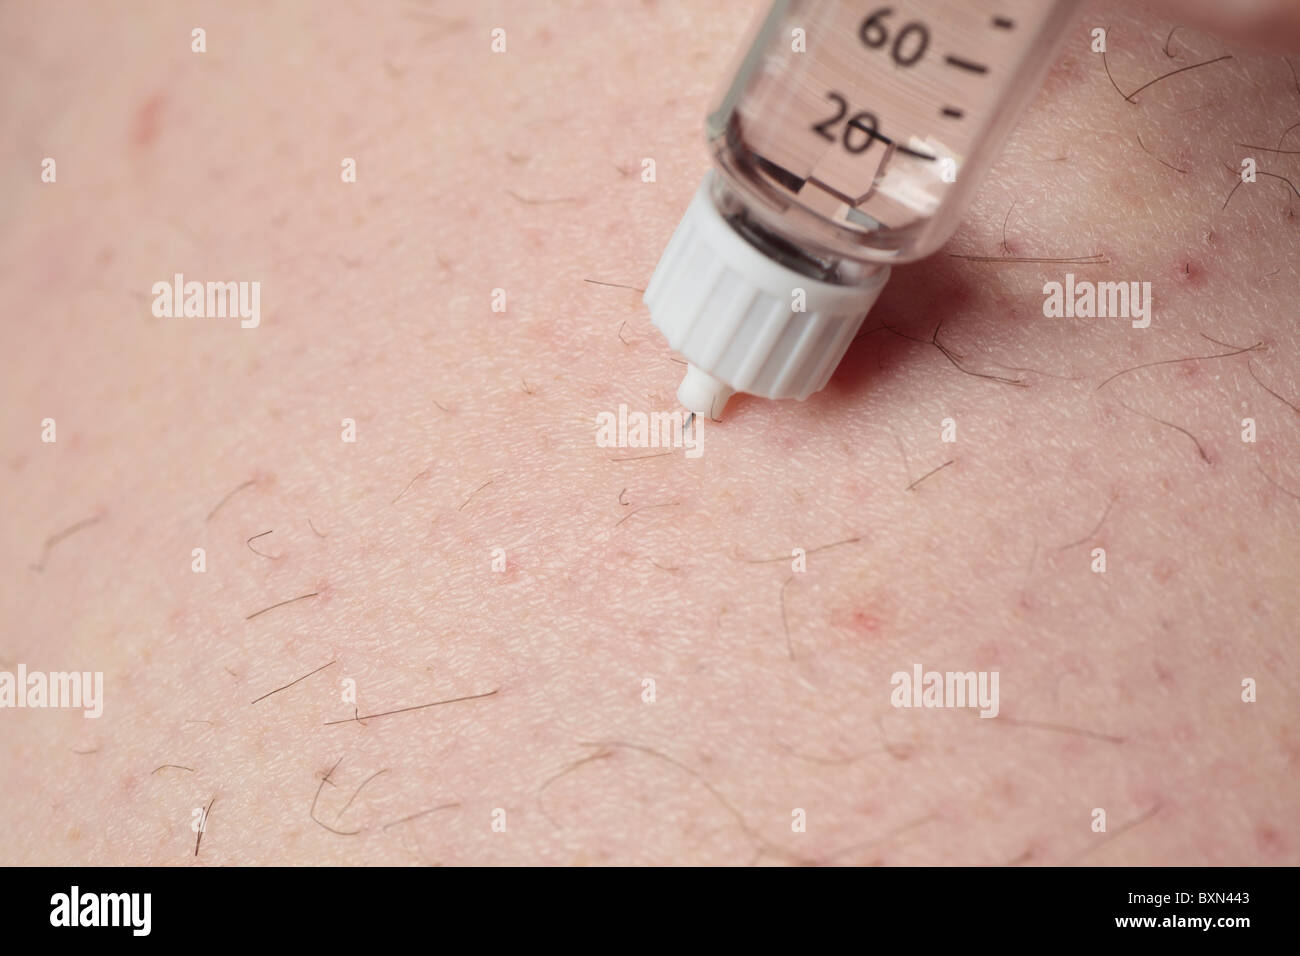 Insulininjektion. Stockfoto